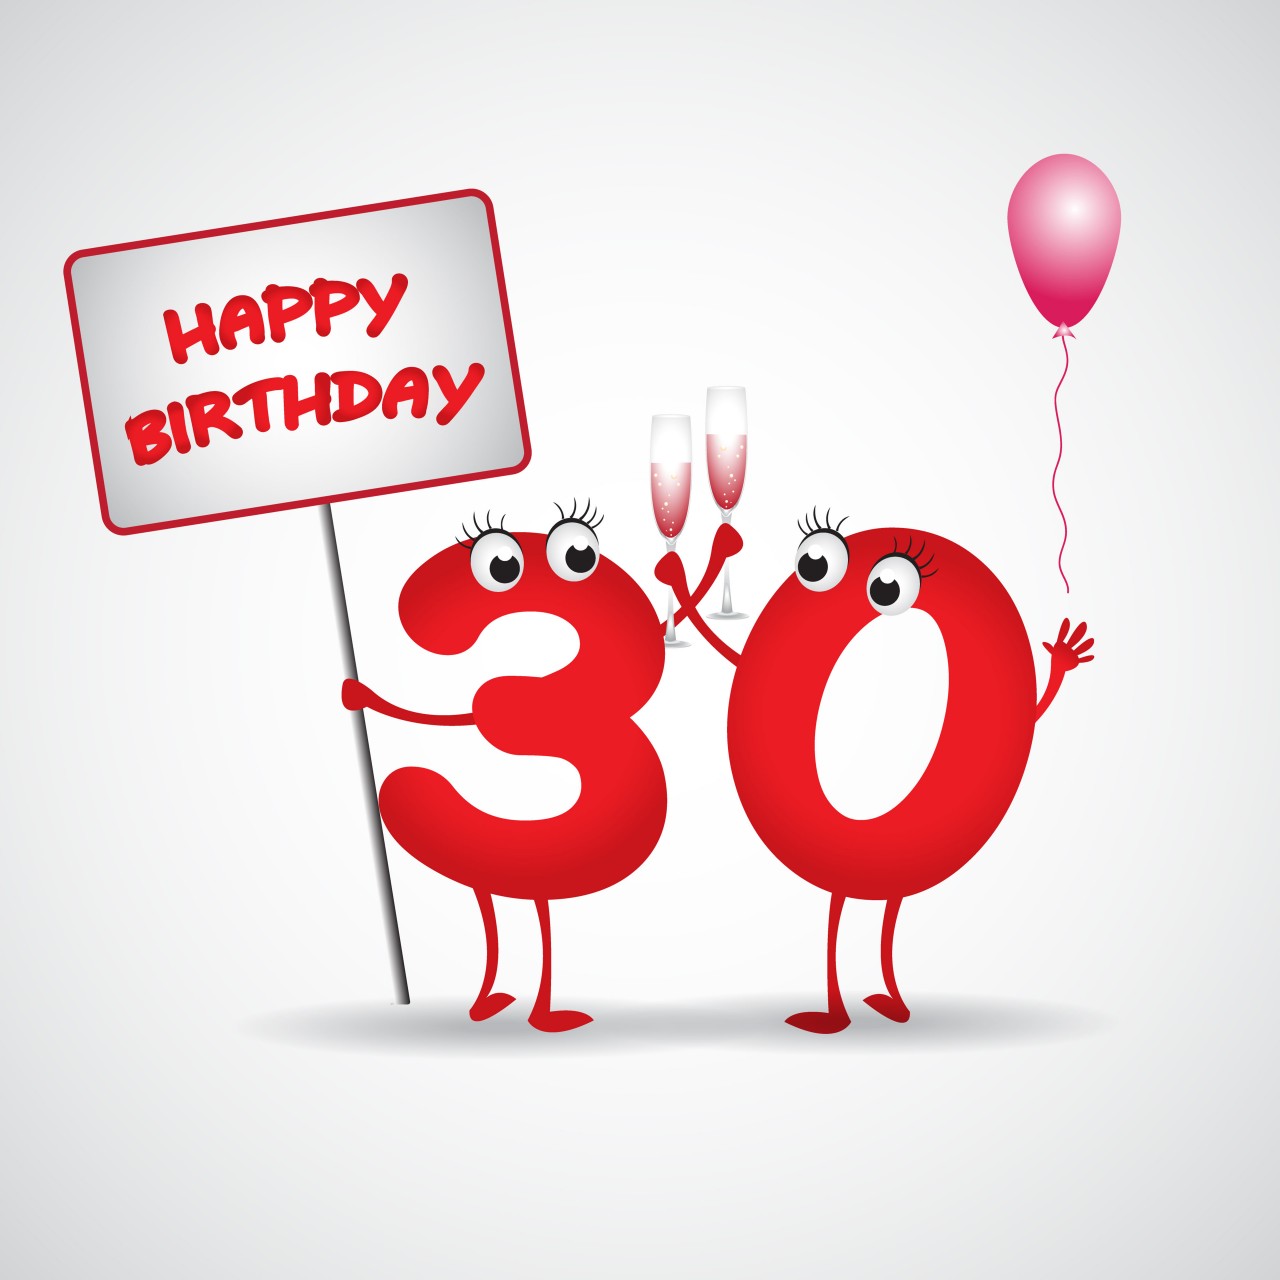 36+ Freche sprueche zum 50 geburtstag fuer frauen , Geburtstagswünsche Geburtstagssprüche Geburtstagsgrüße Zum 30. Geburtstag